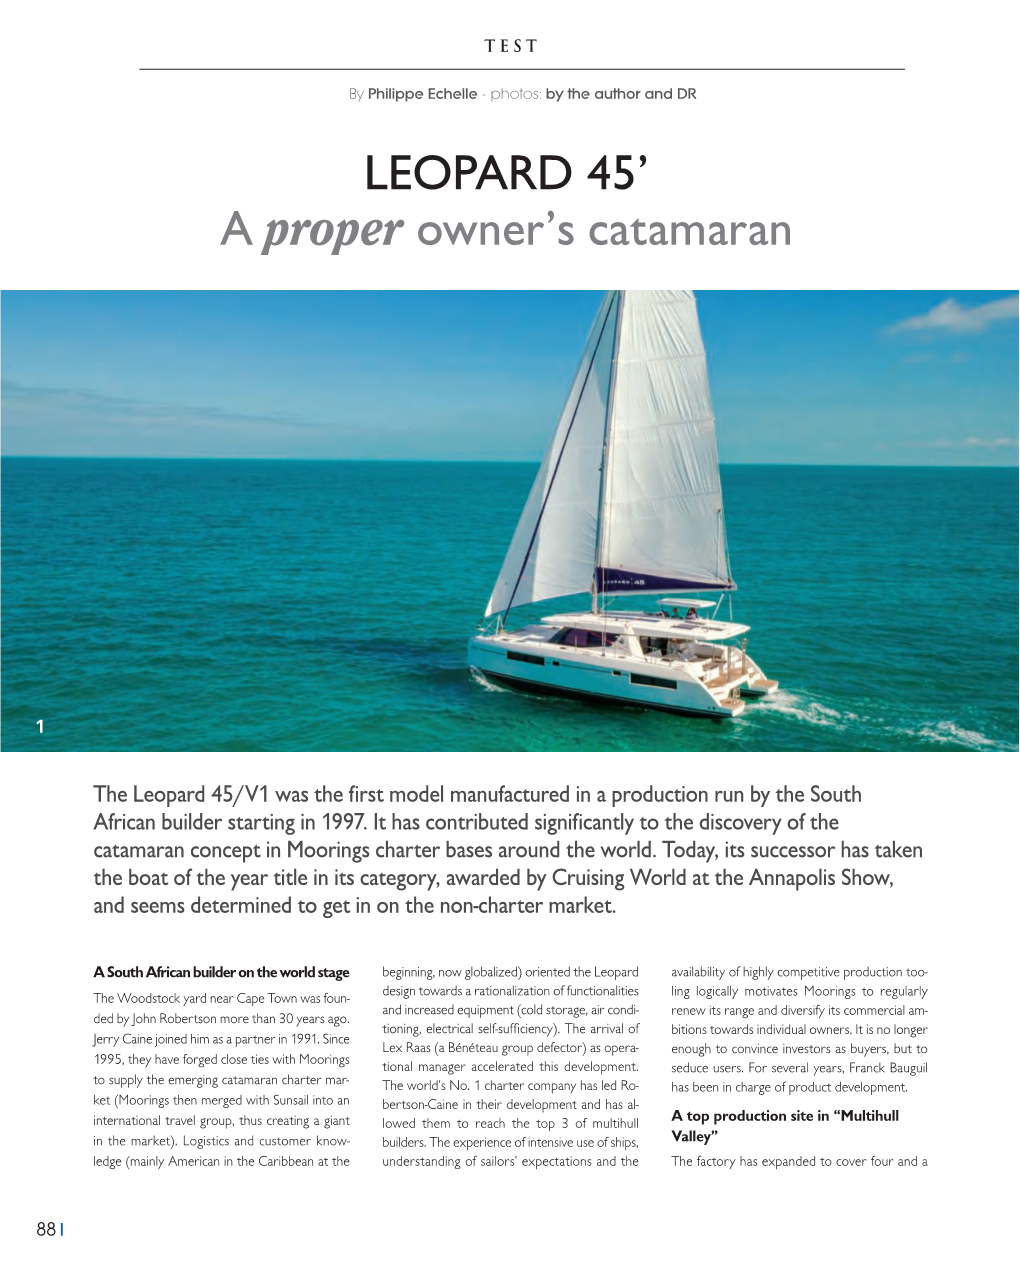 LEOPARD 45' a Proper Owner's Catamaran